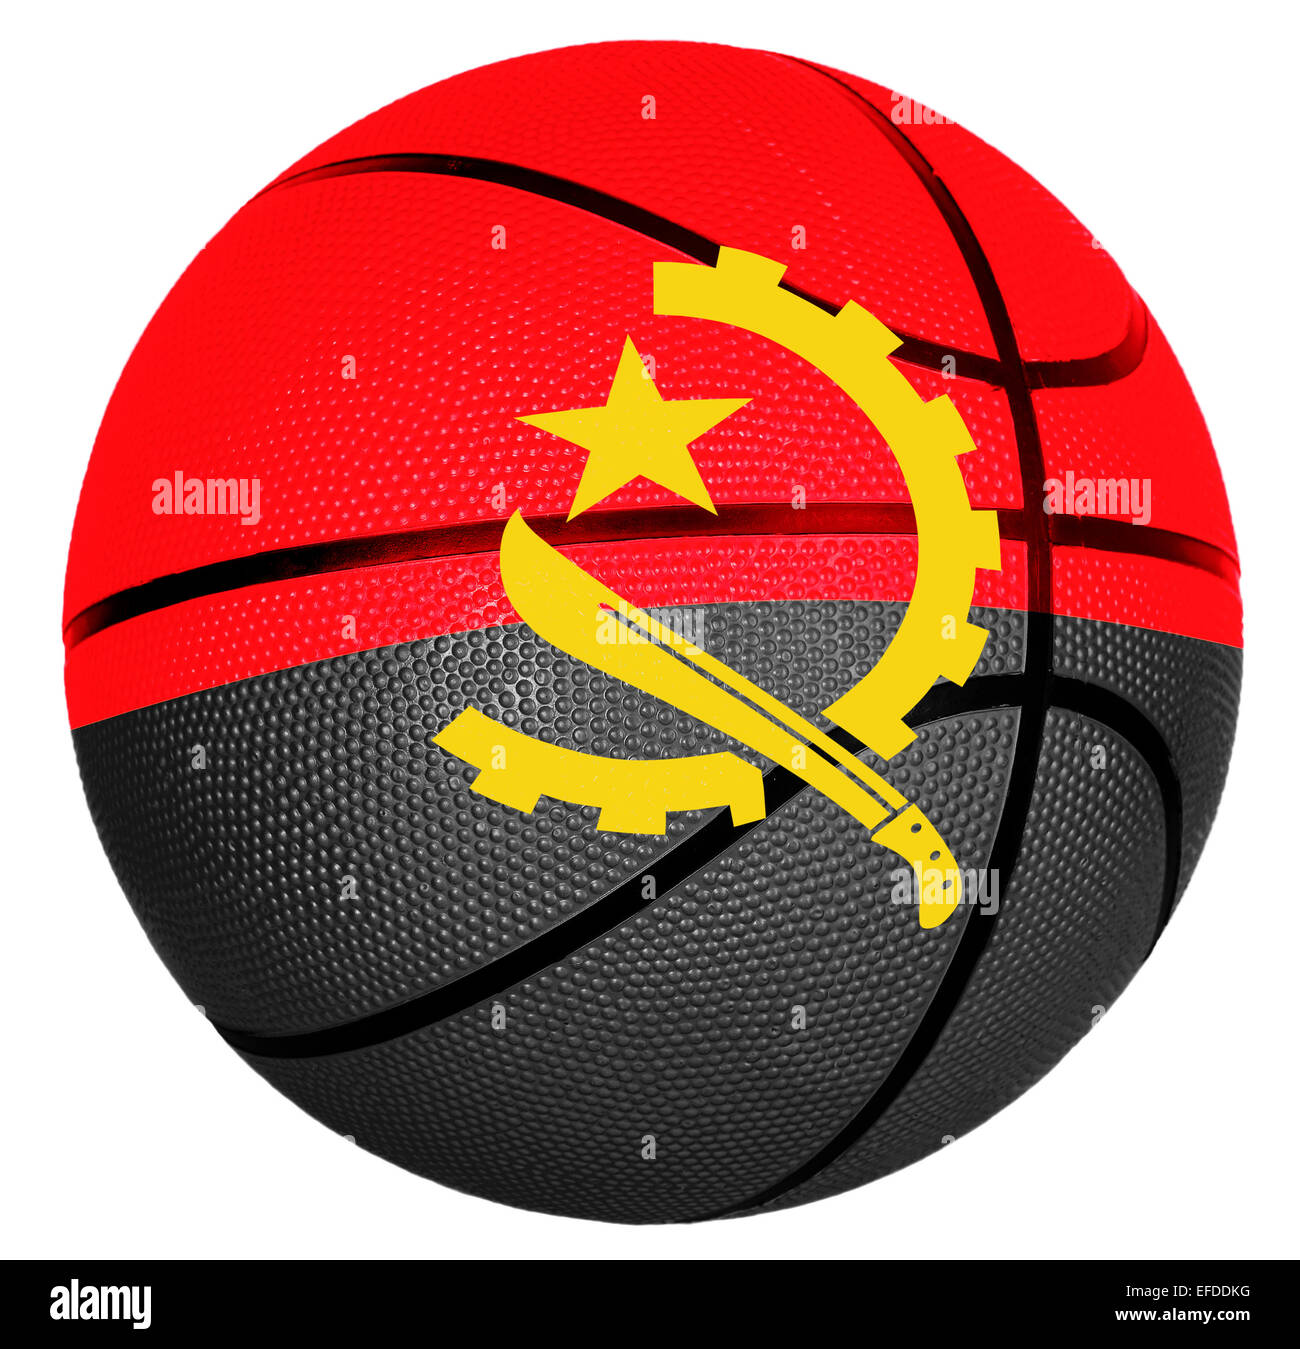 Ball with flag of Angola for basketball game Stock Photo